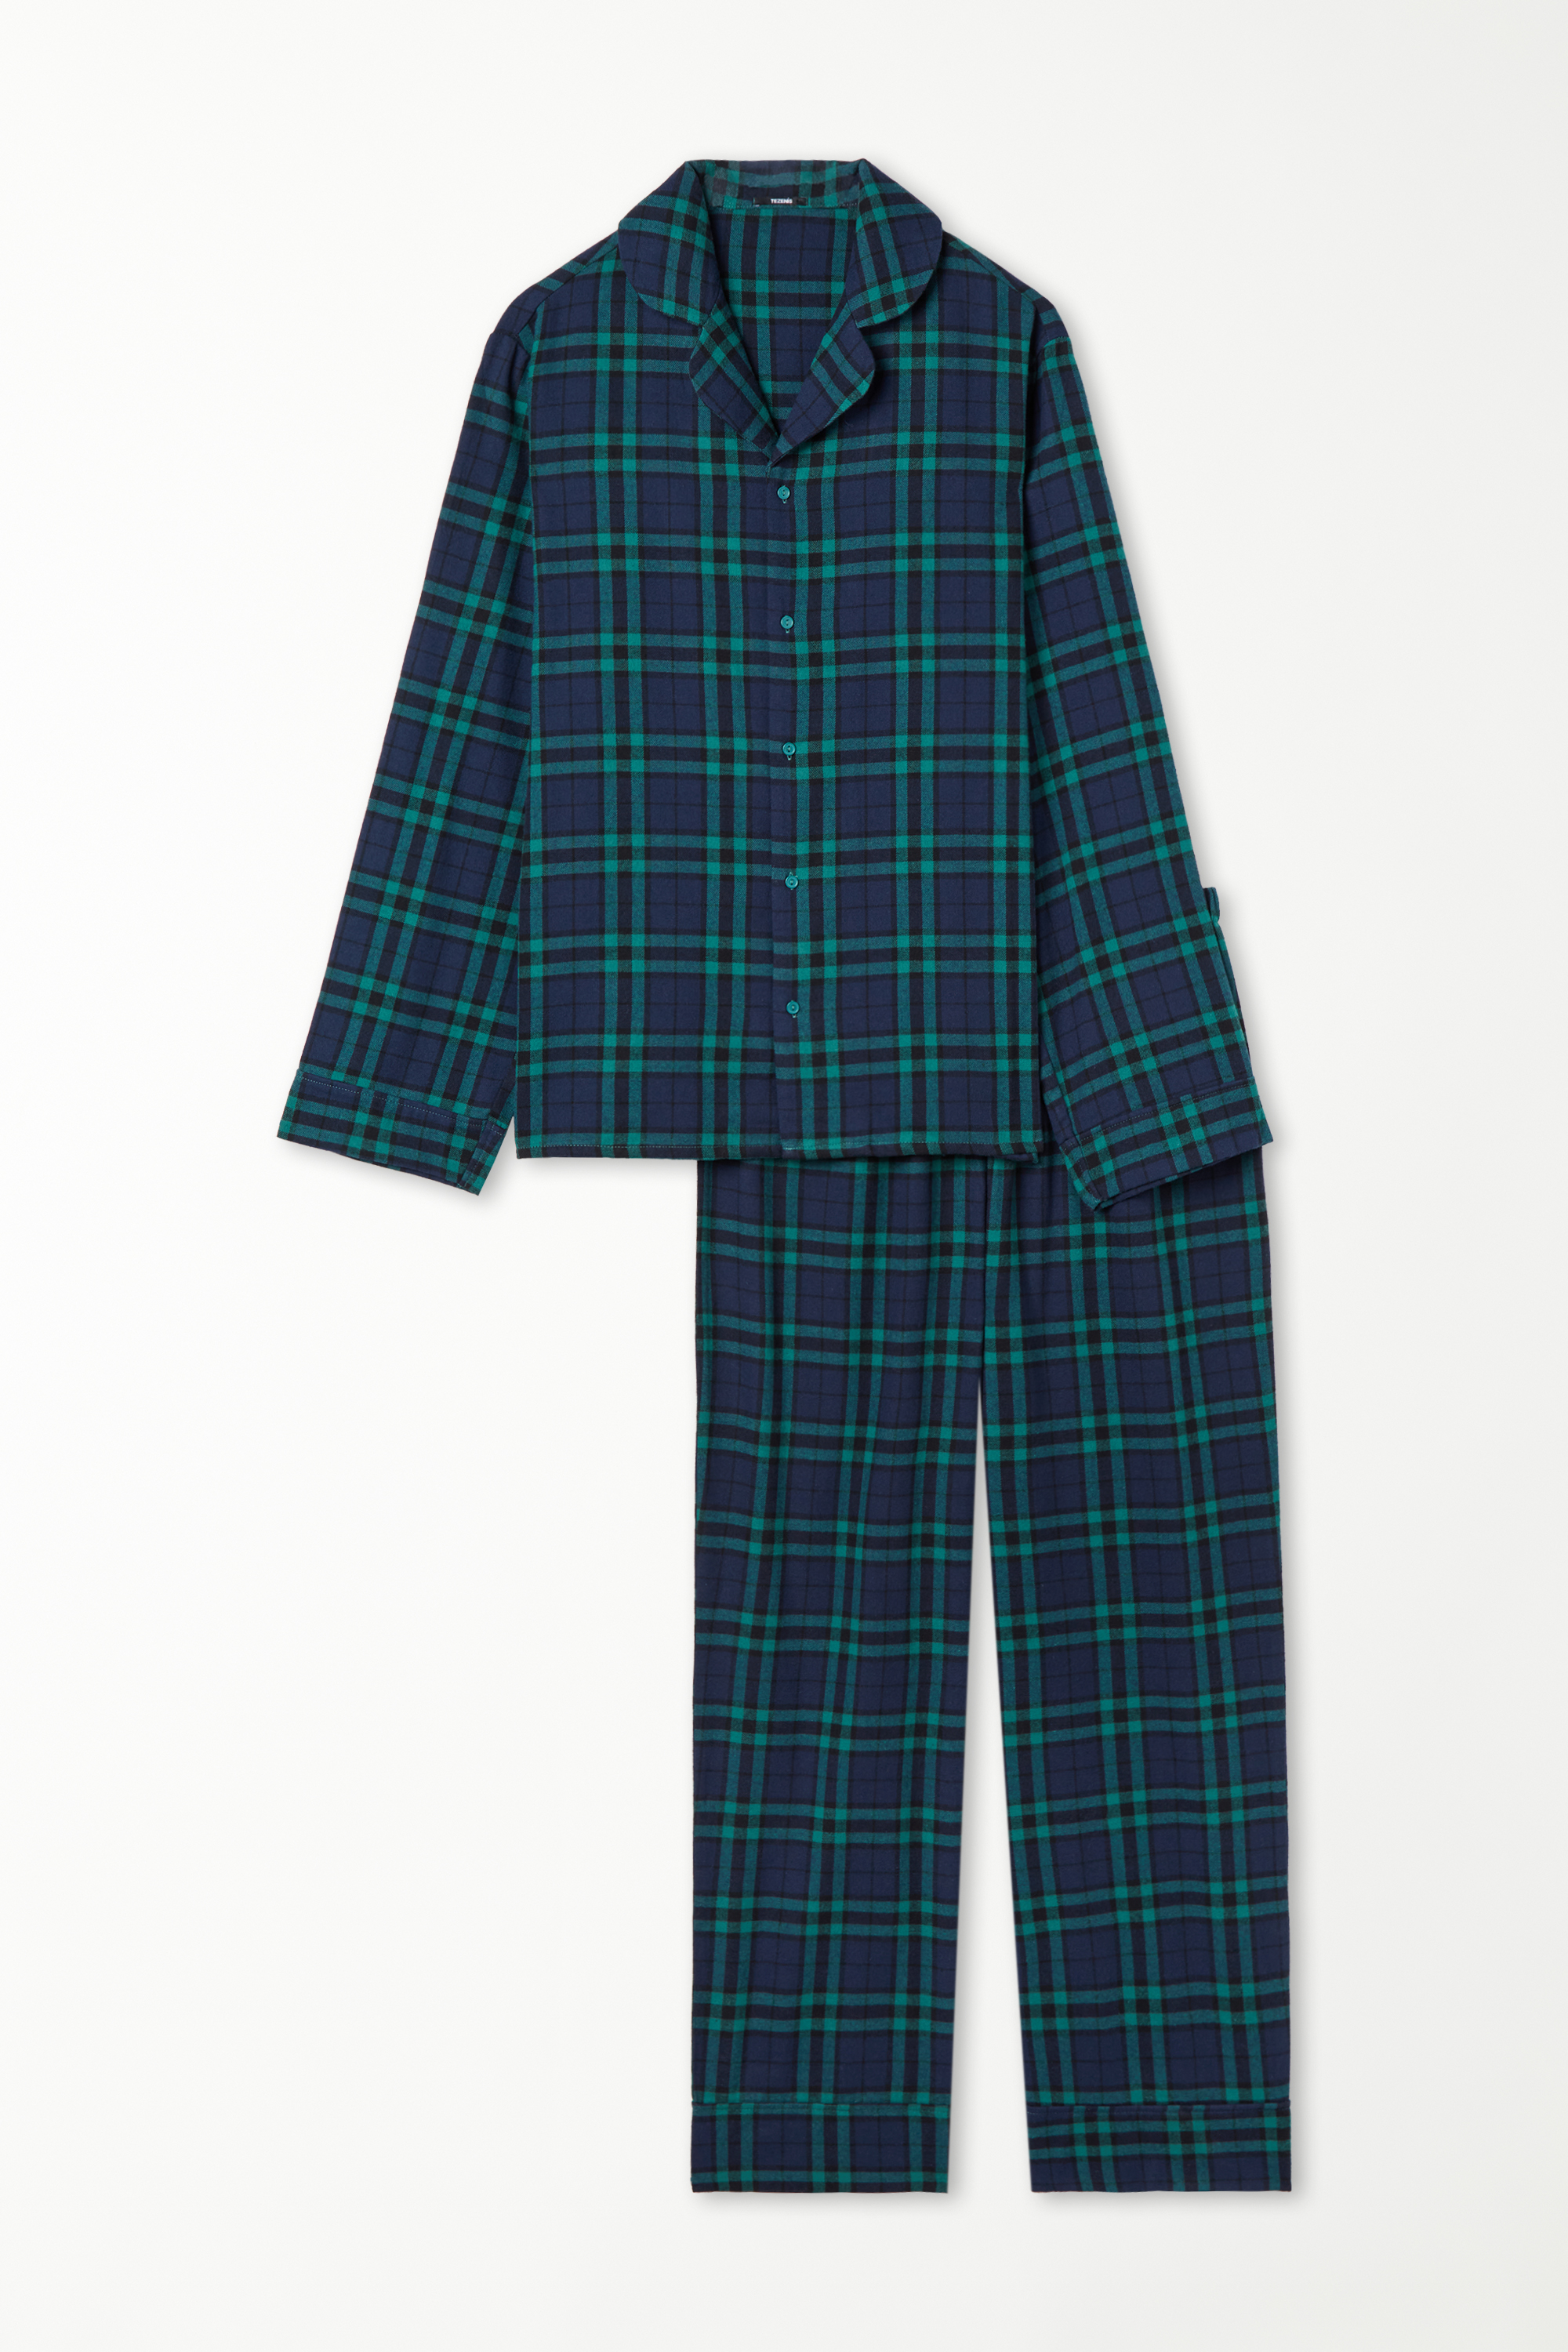 Langer Pyjama mit durchgeknöpftem Oberteil aus Flanell